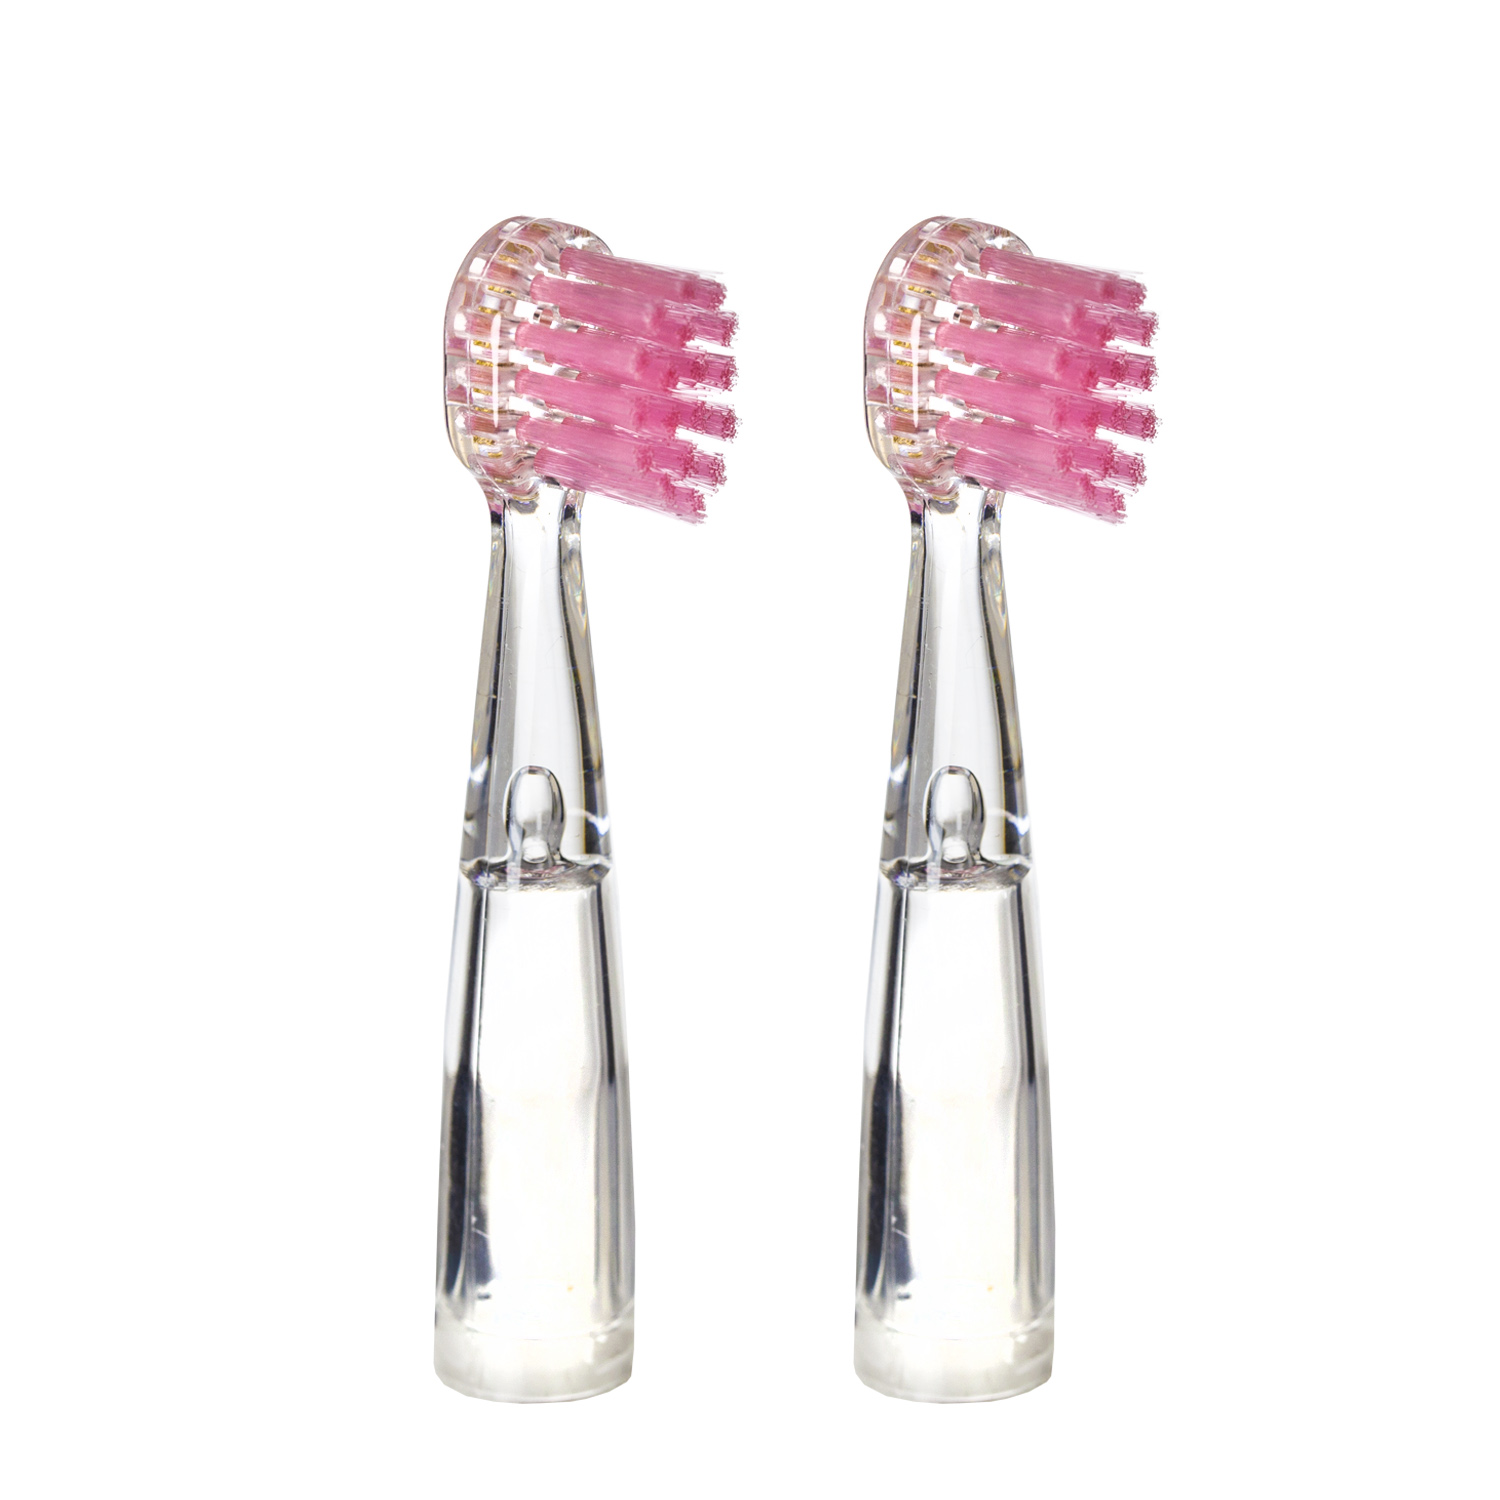 Насадка для детской электрической зубной щетки Revyline RL 025, розовая, 2 шт., 6171 насадка для электрической зубной щетки beiber kids oral b 2 шт